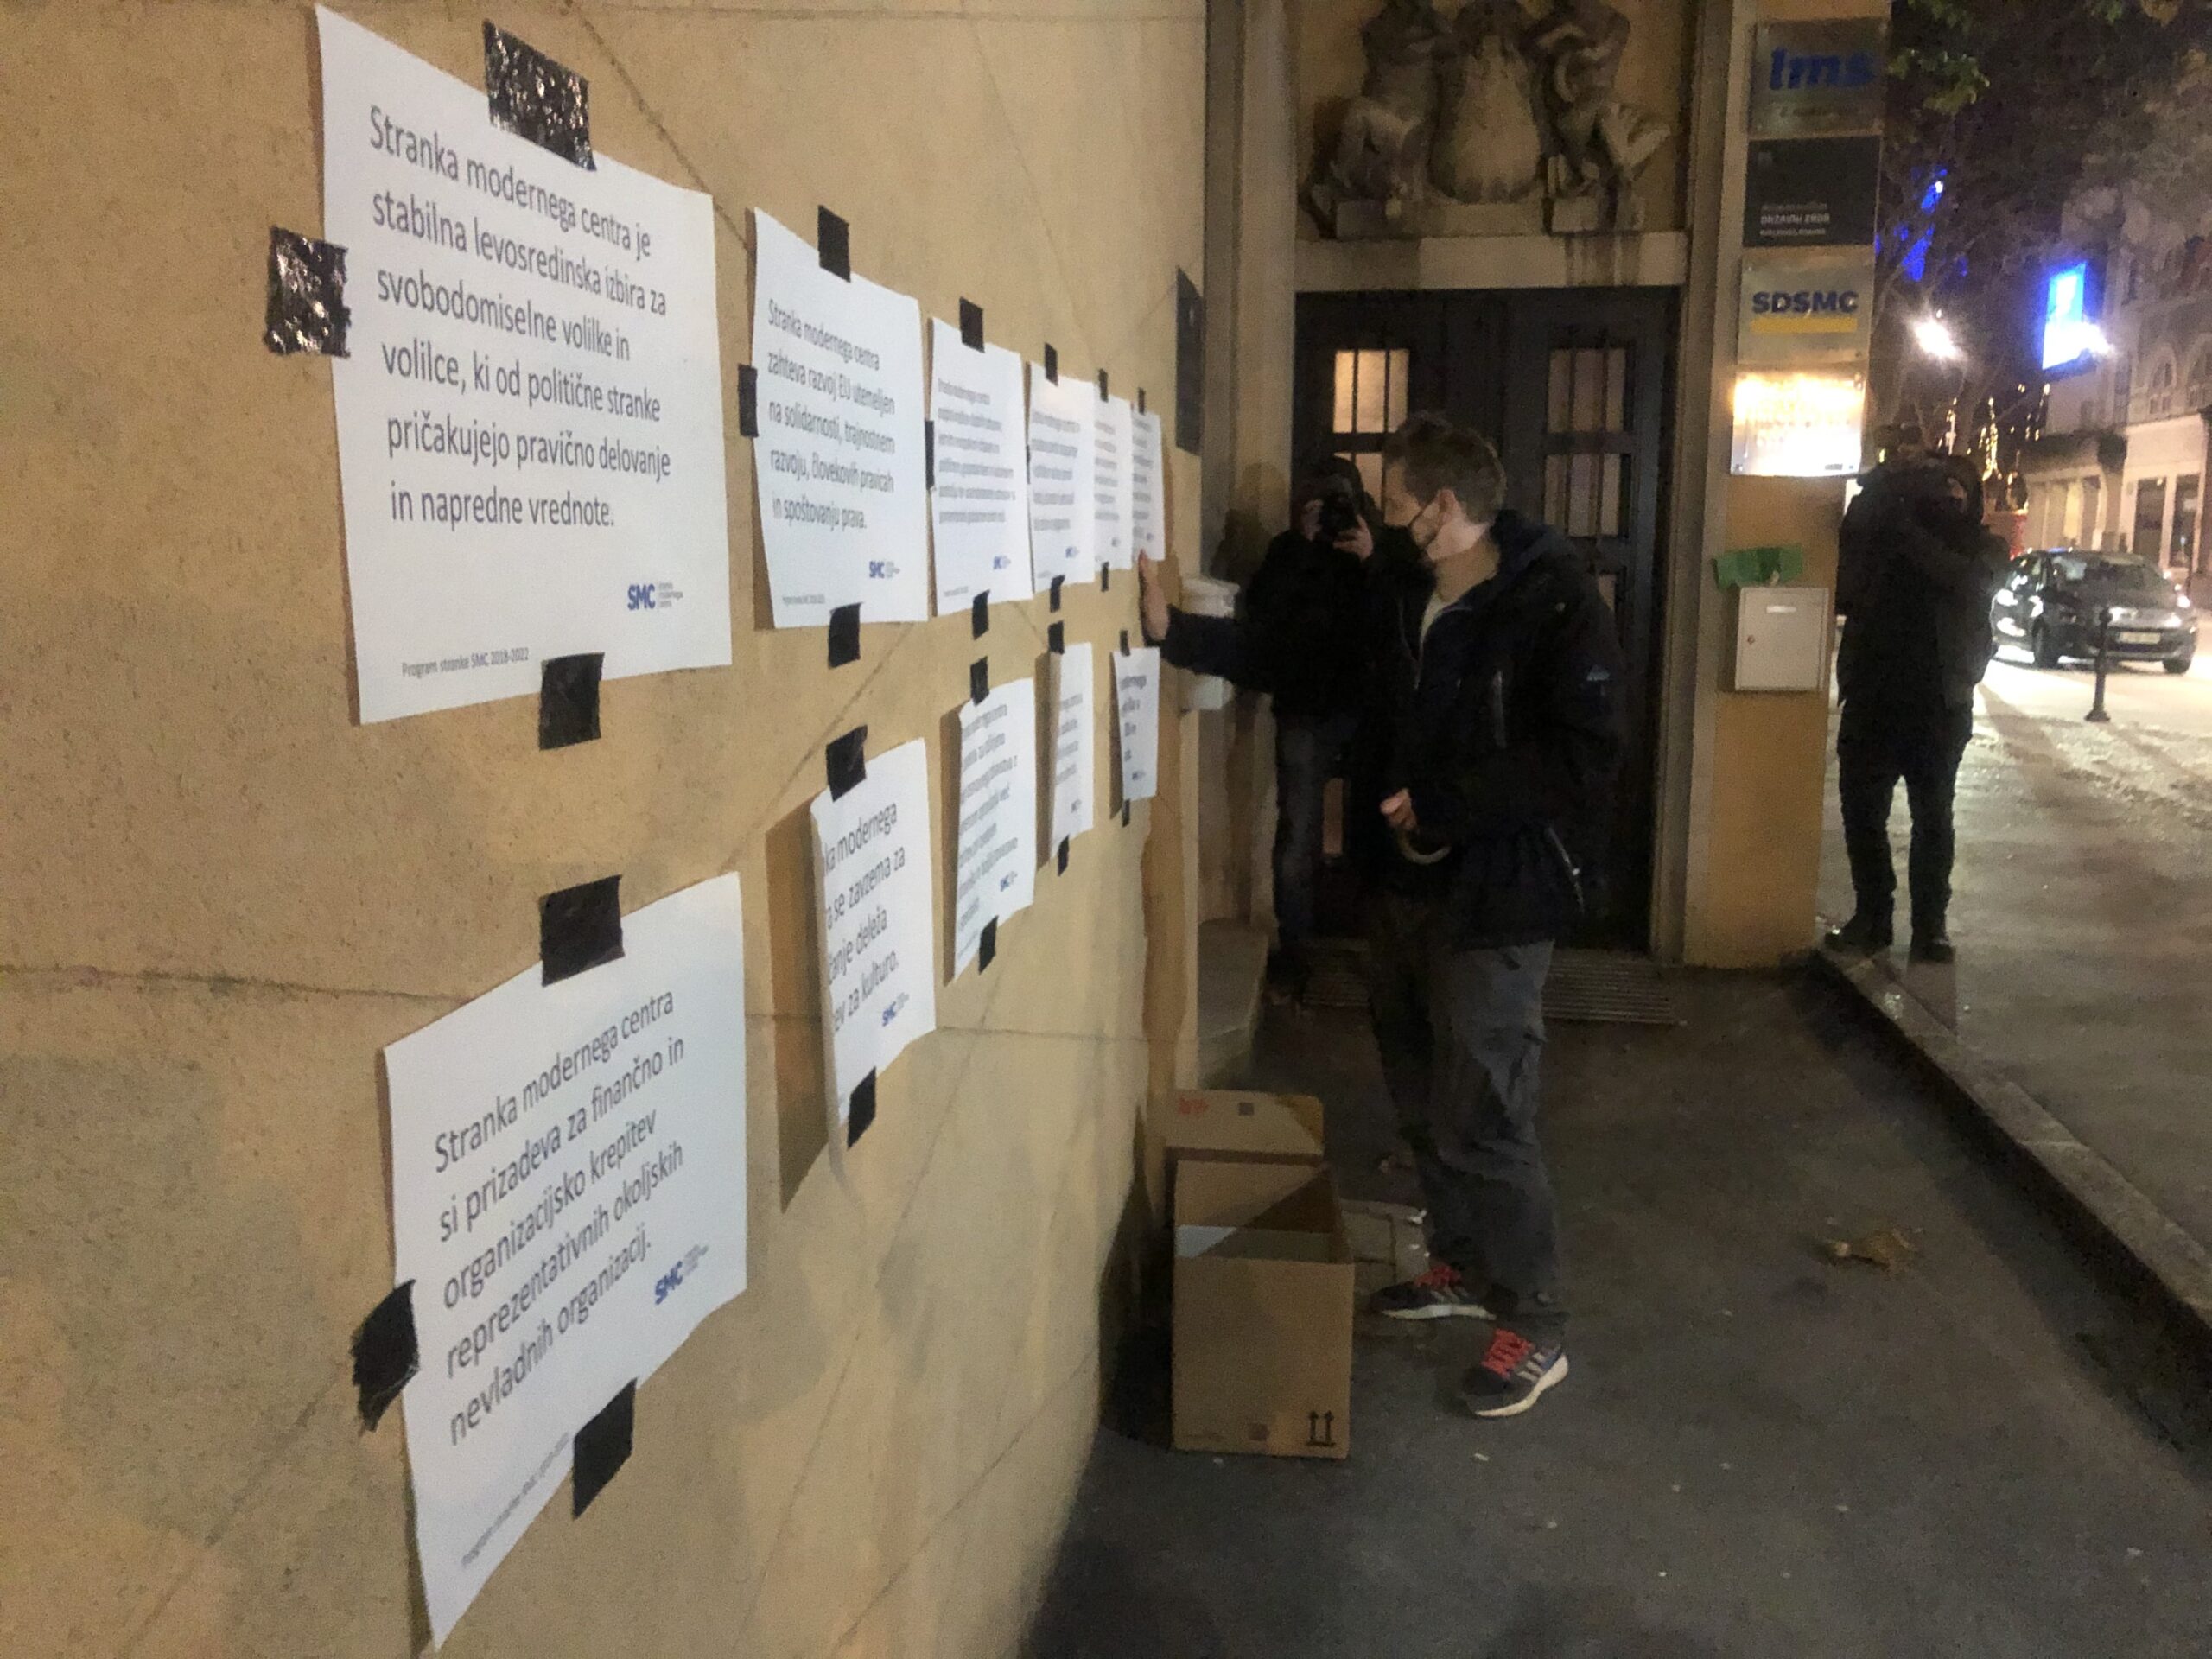 (VIDEO) Protestniki “hrabrijo” SMC- Pred sedežem stranke SMC napovedali protestno akcijo na katero bodo prinesli transparente “pisma vzpodbude” in česen